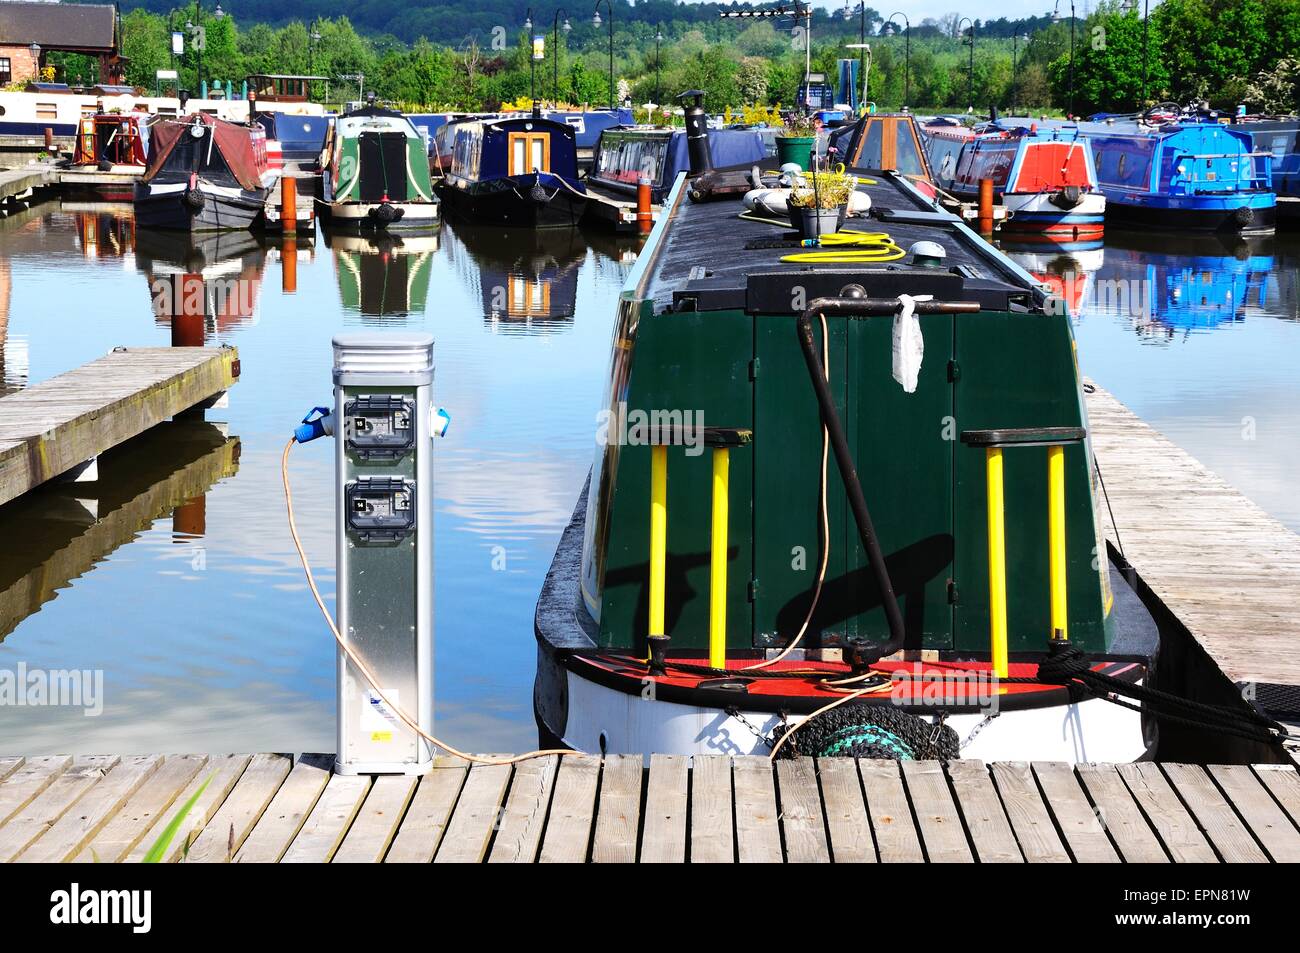 Narrowboats sur leurs amarres raccordés à l'électricité dans le bassin du canal, Barton Marina, Barton-under-Needwood, UK. Banque D'Images